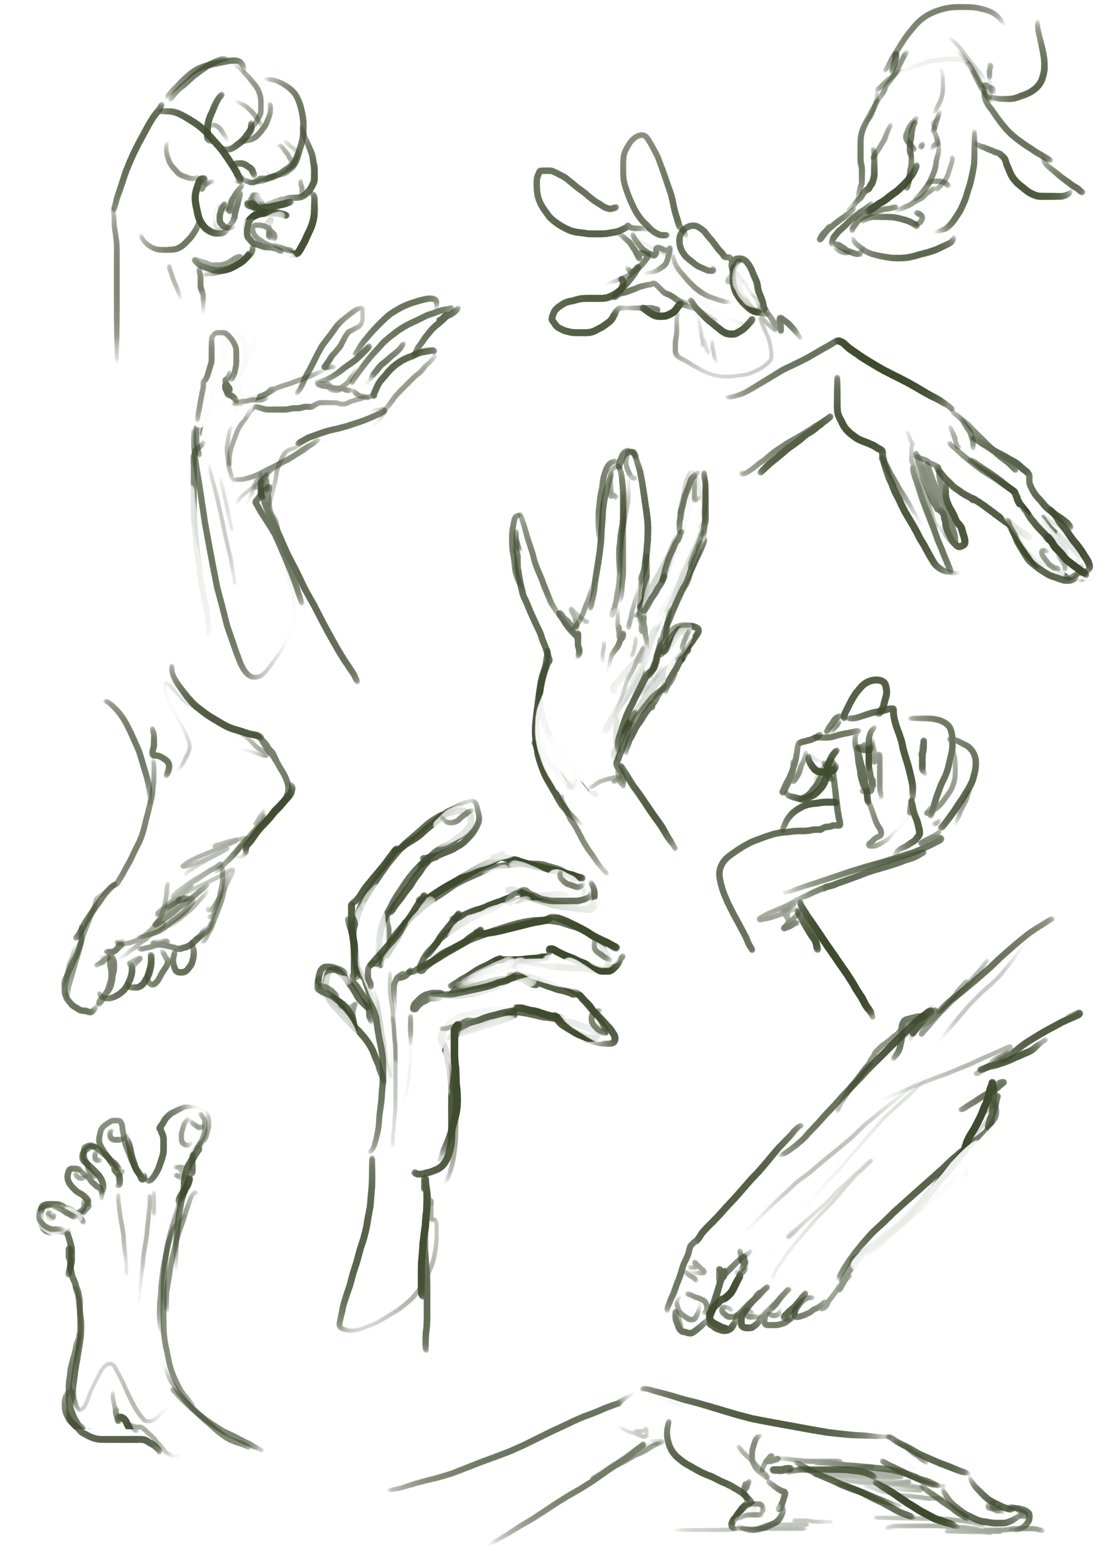 Референсы рук рисунок. Кисть руки сбоку референс. Рука сбоку референс. Референсы рук сбоку. Позы рук для рисования.